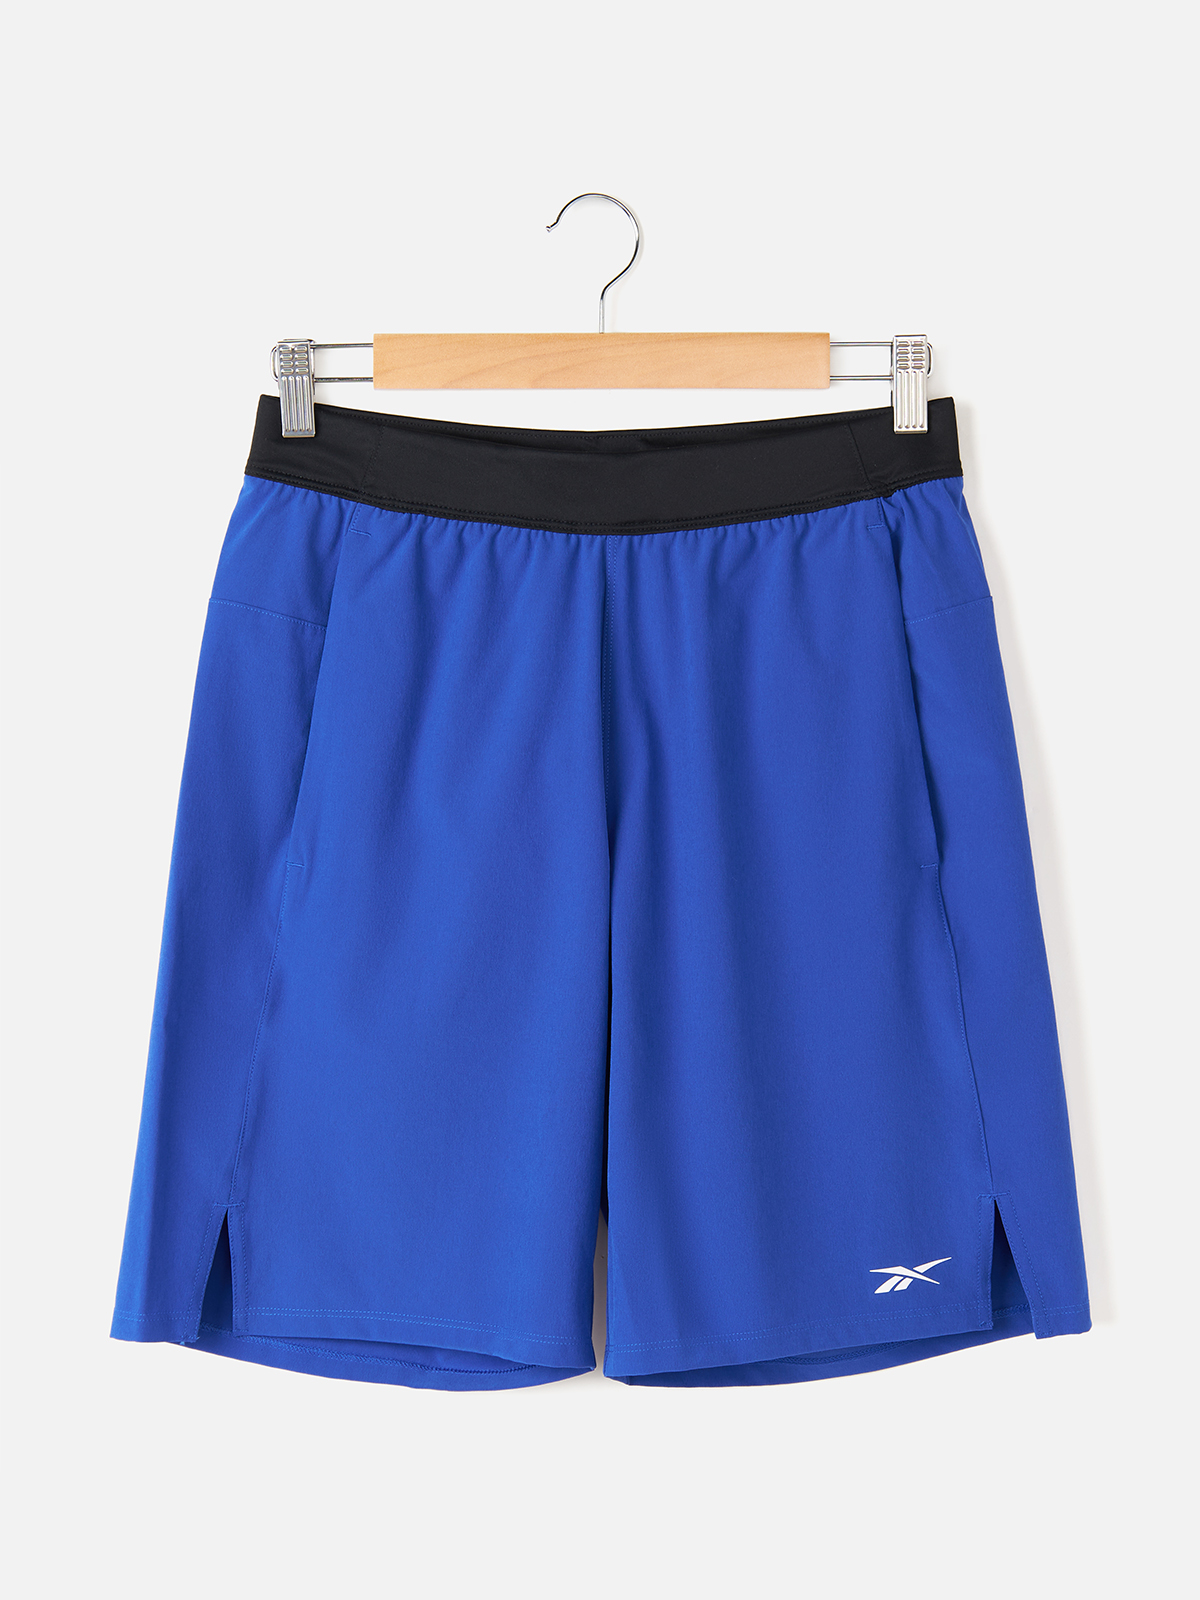 Спортивные шорты Reebok для мужчин, brgcob, XS, GS6568